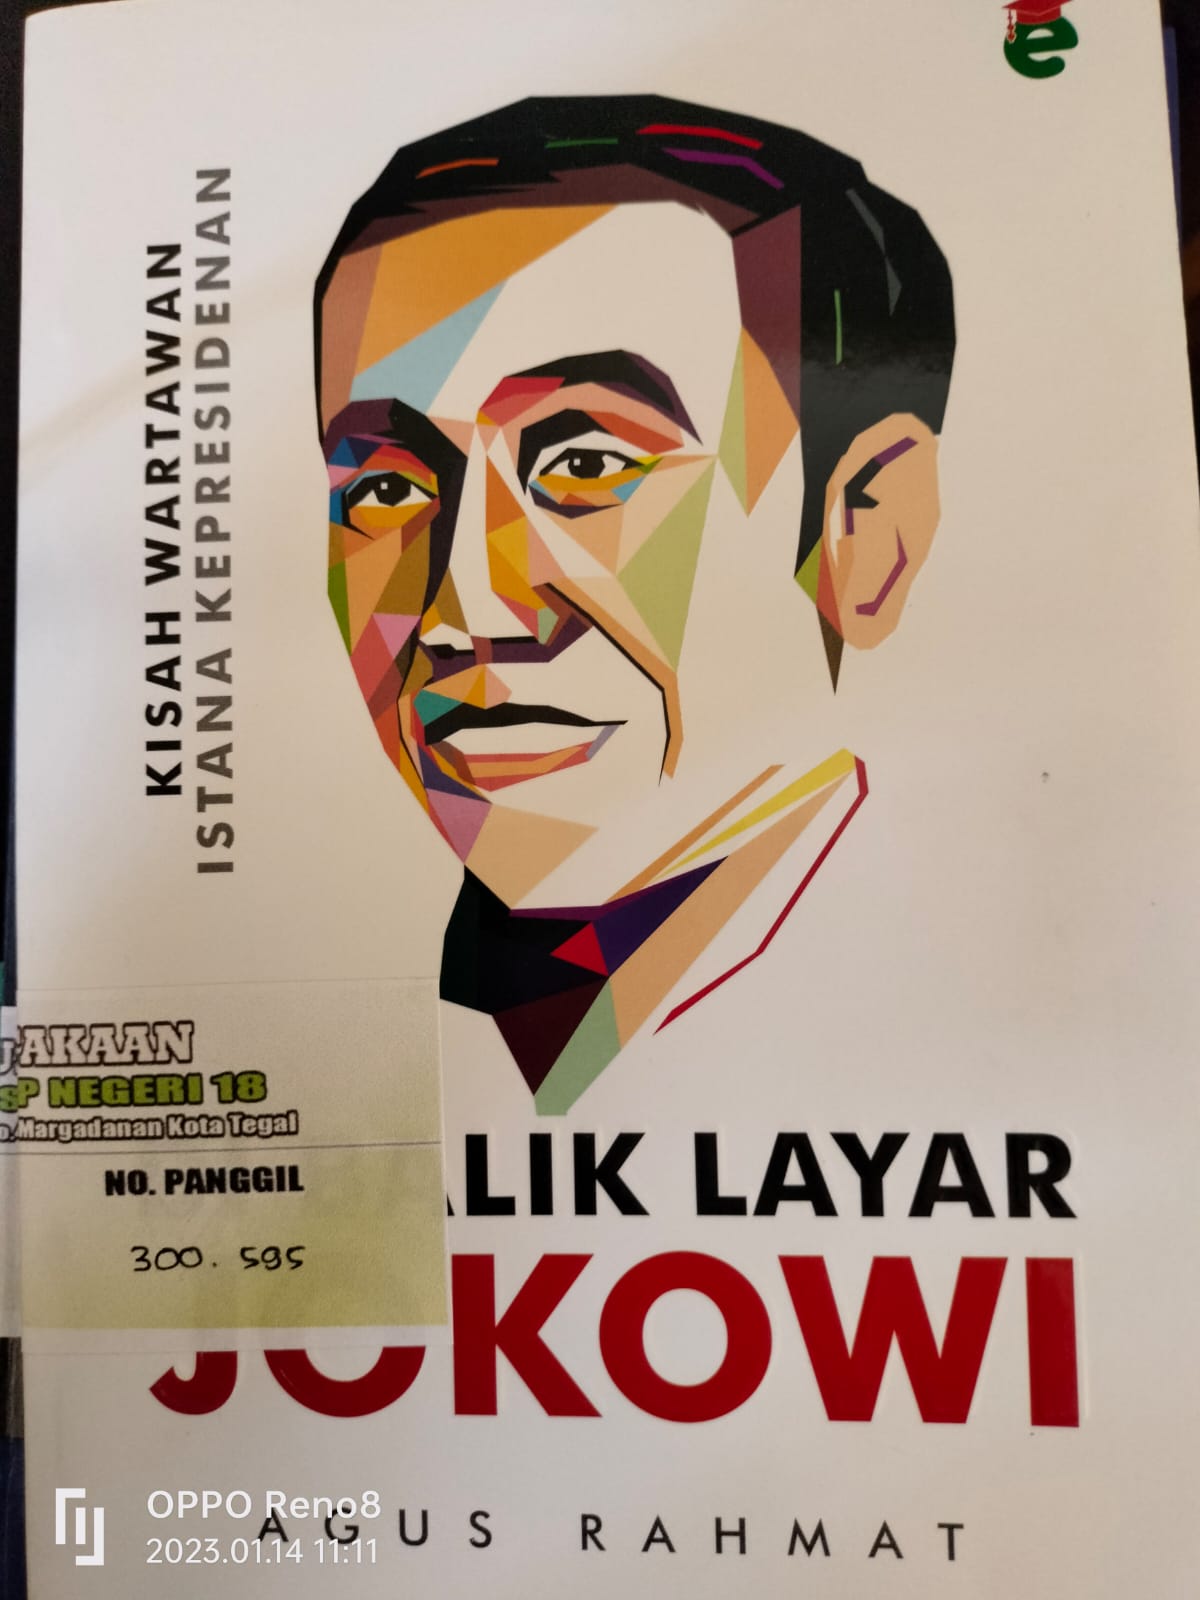 Dibalik Layar Jokowi Kisah Wartawan Istana Kepresidenan